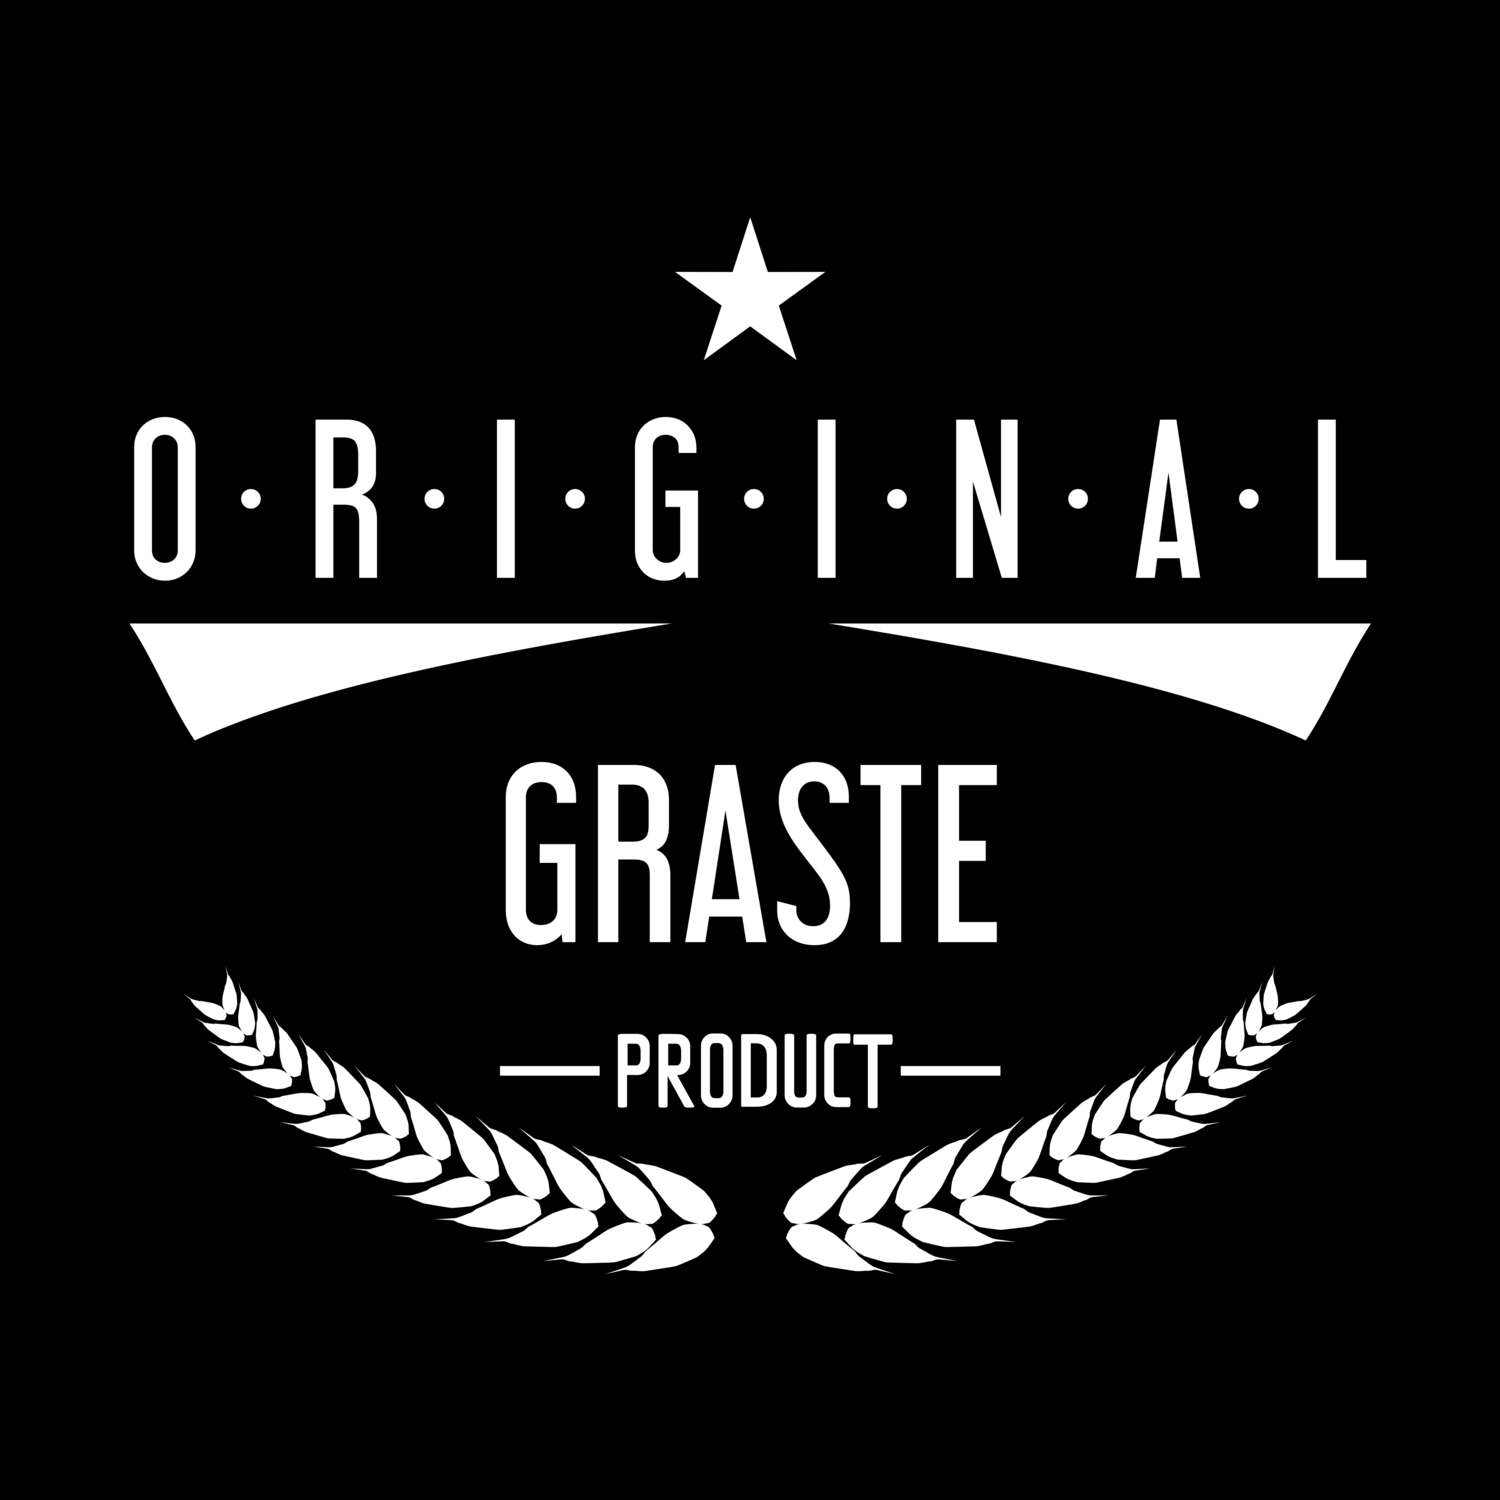 Graste T-Shirt »Original Product«